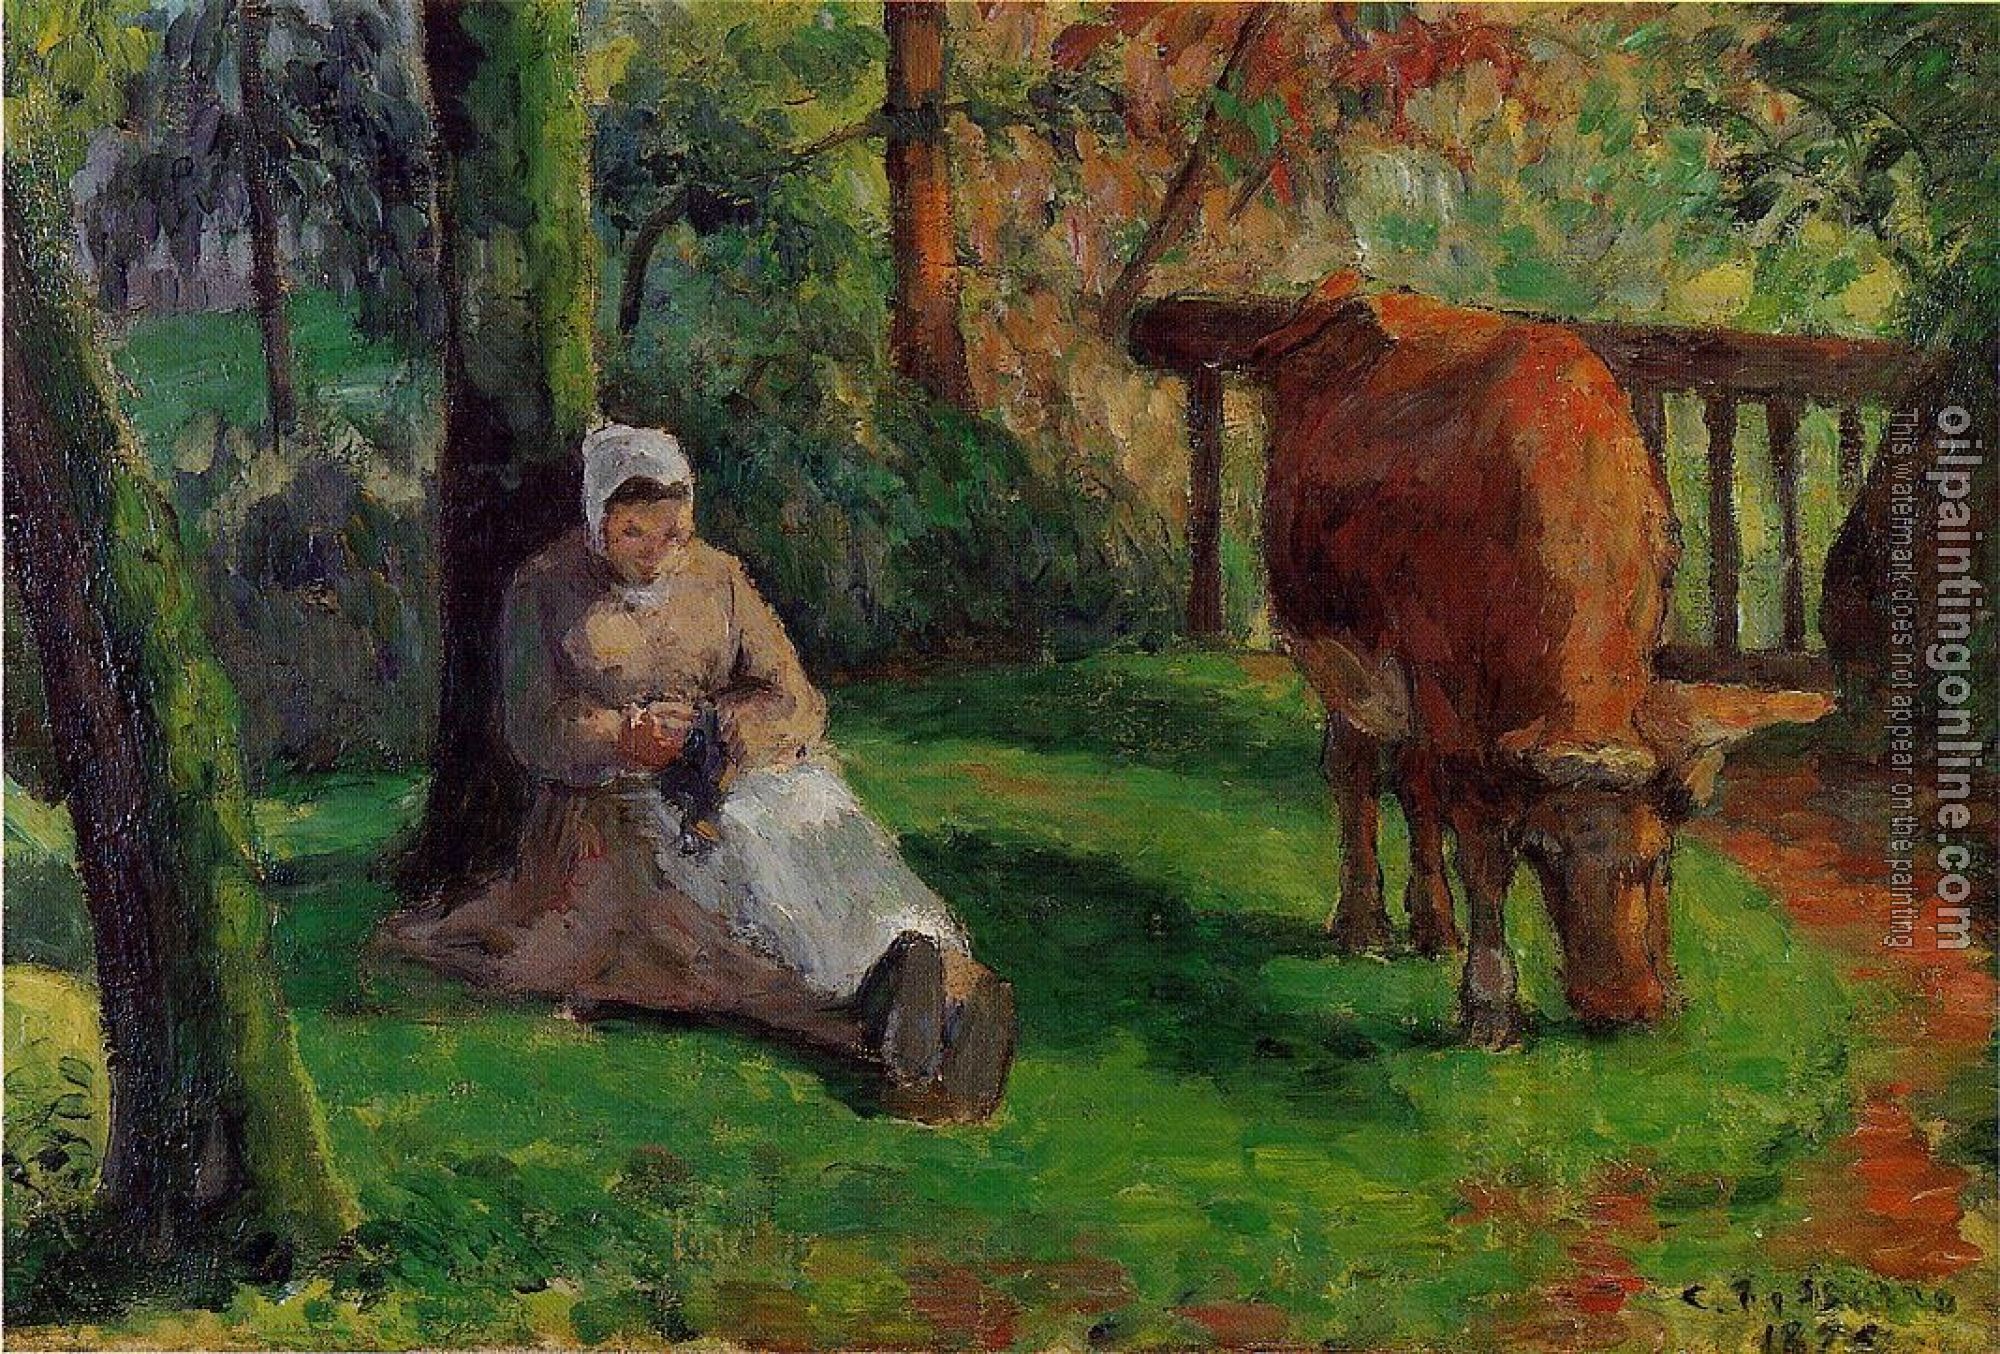 Pissarro, Camille - Cowherd